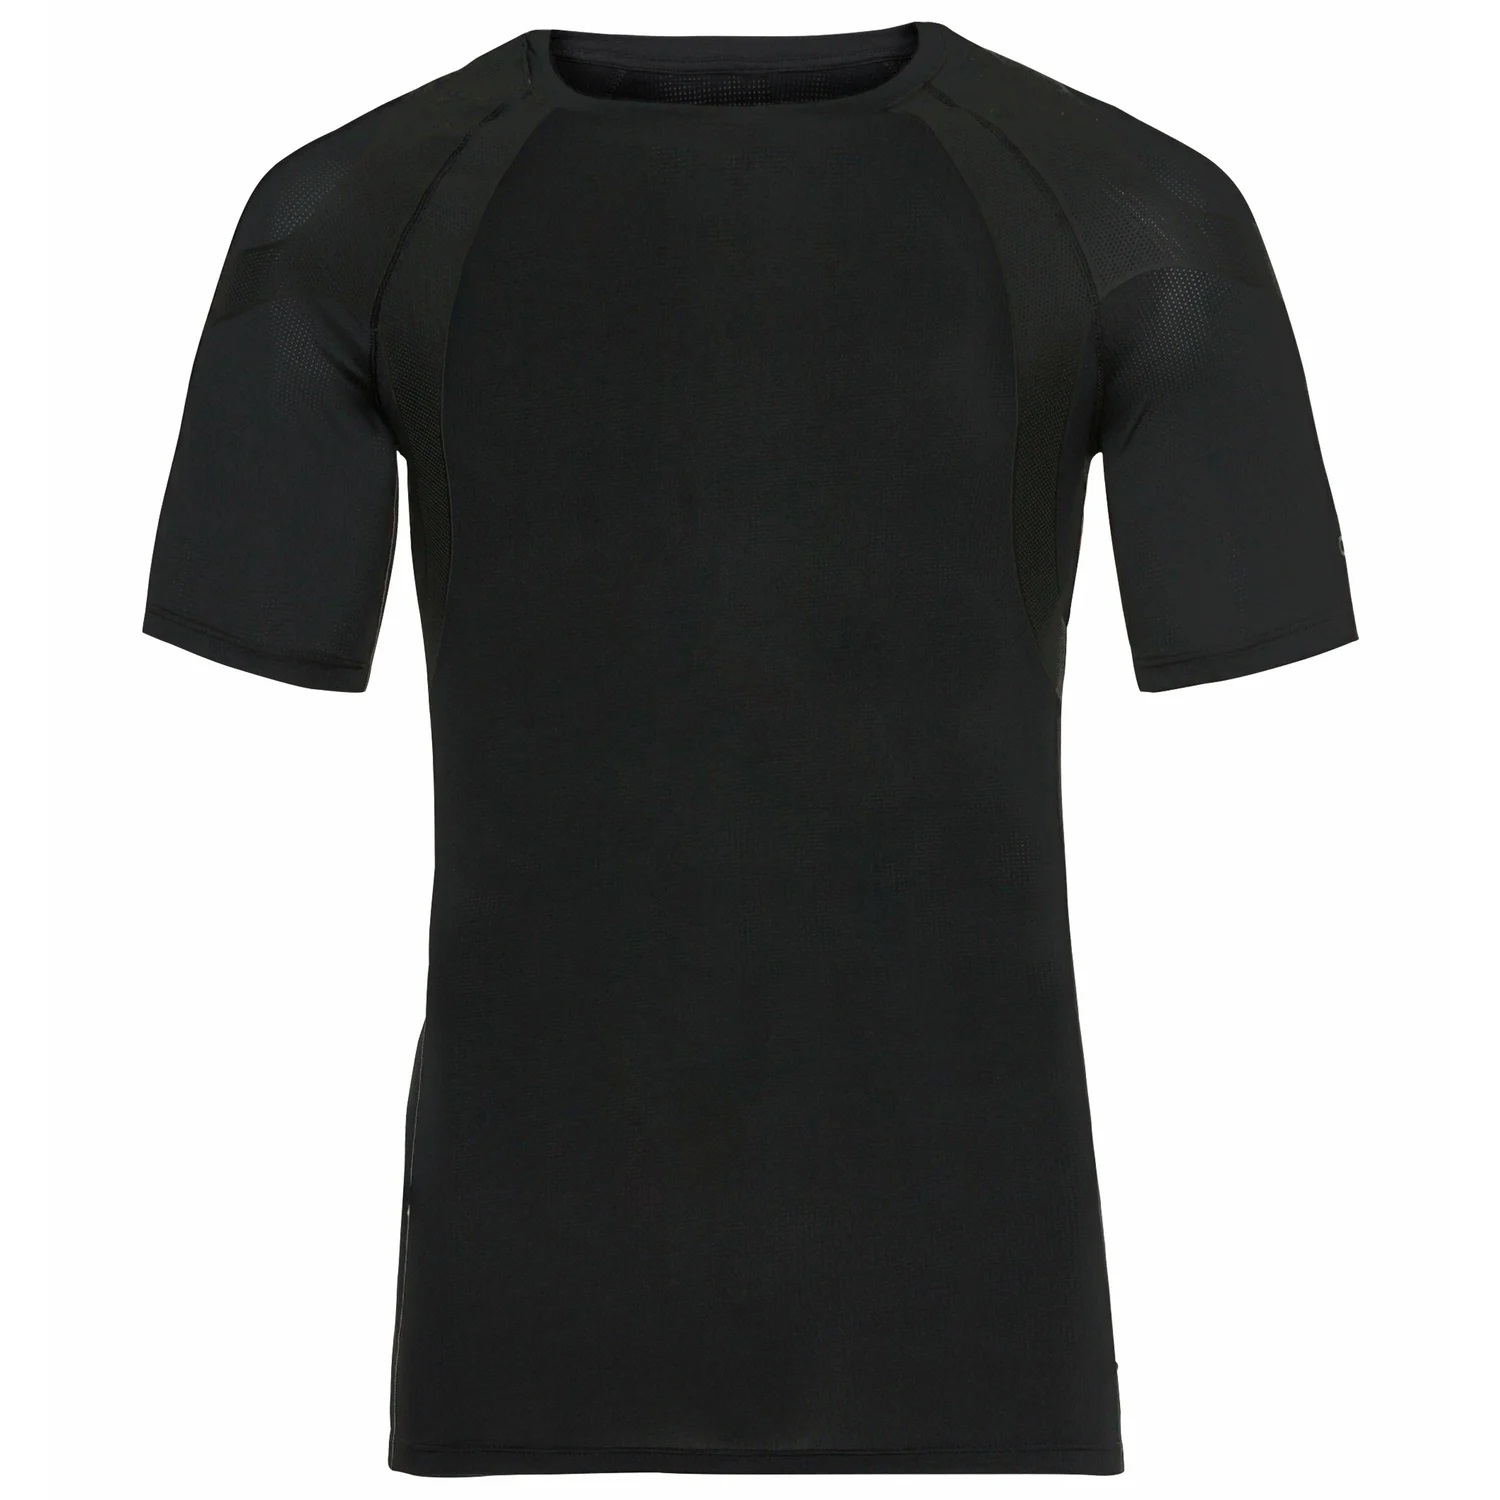 Productfoto van Odlo Active Spine 2.0 Hardloopshirt Dames - zwart